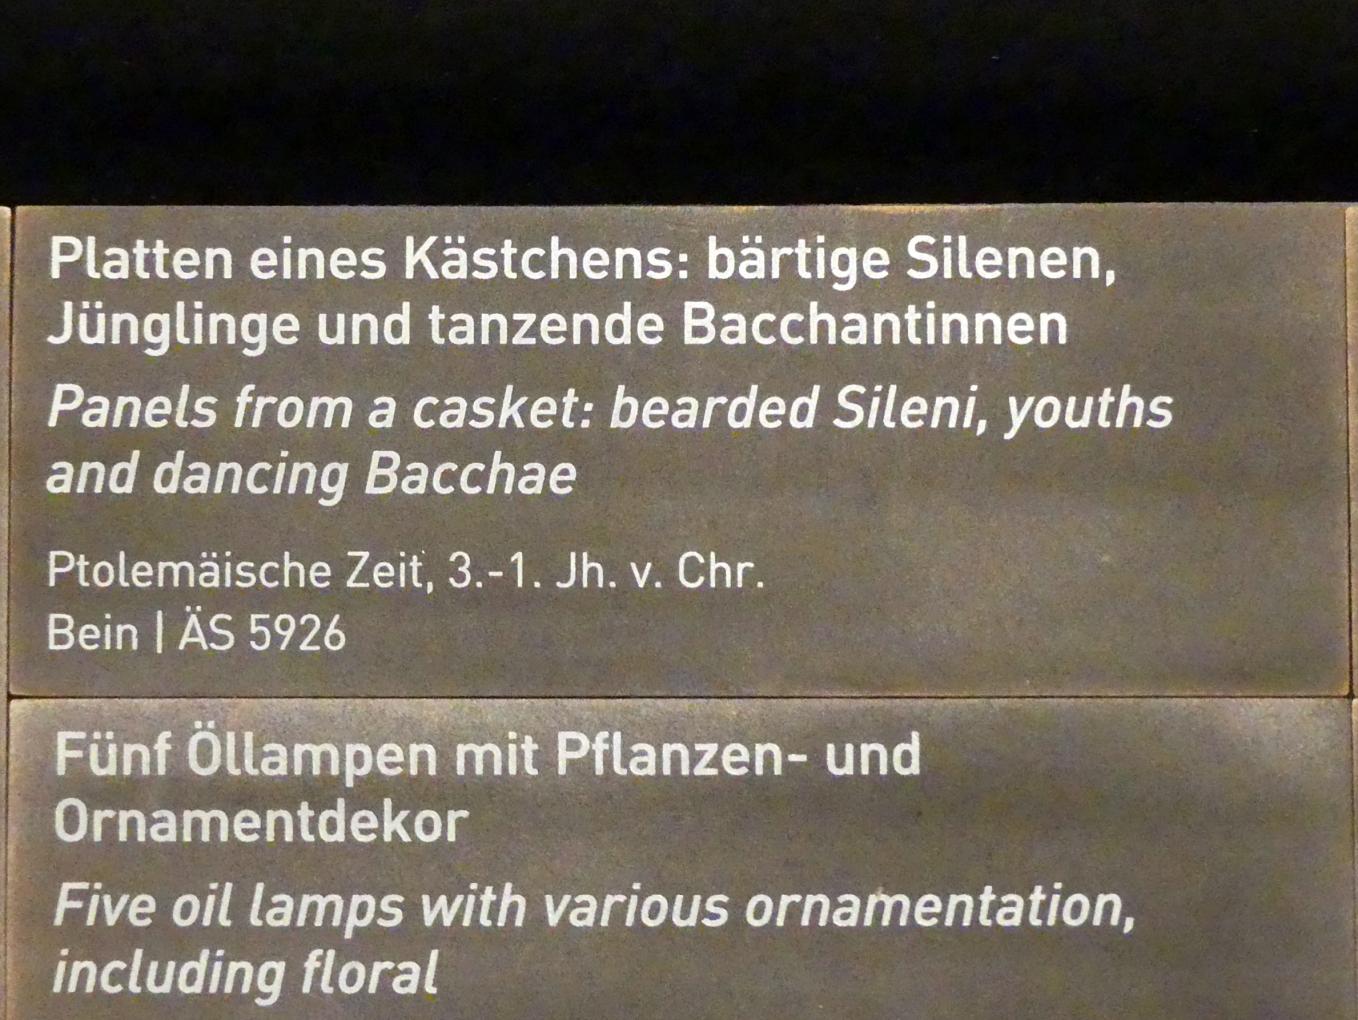 Platten eines Kästchens: bärtige Silenen, Jünglinge und tanzende Bacchantinnen, Ptolemäische Zeit, 400 v. Chr. - 1 n. Chr., 300 - 1 v. Chr., Bild 2/2